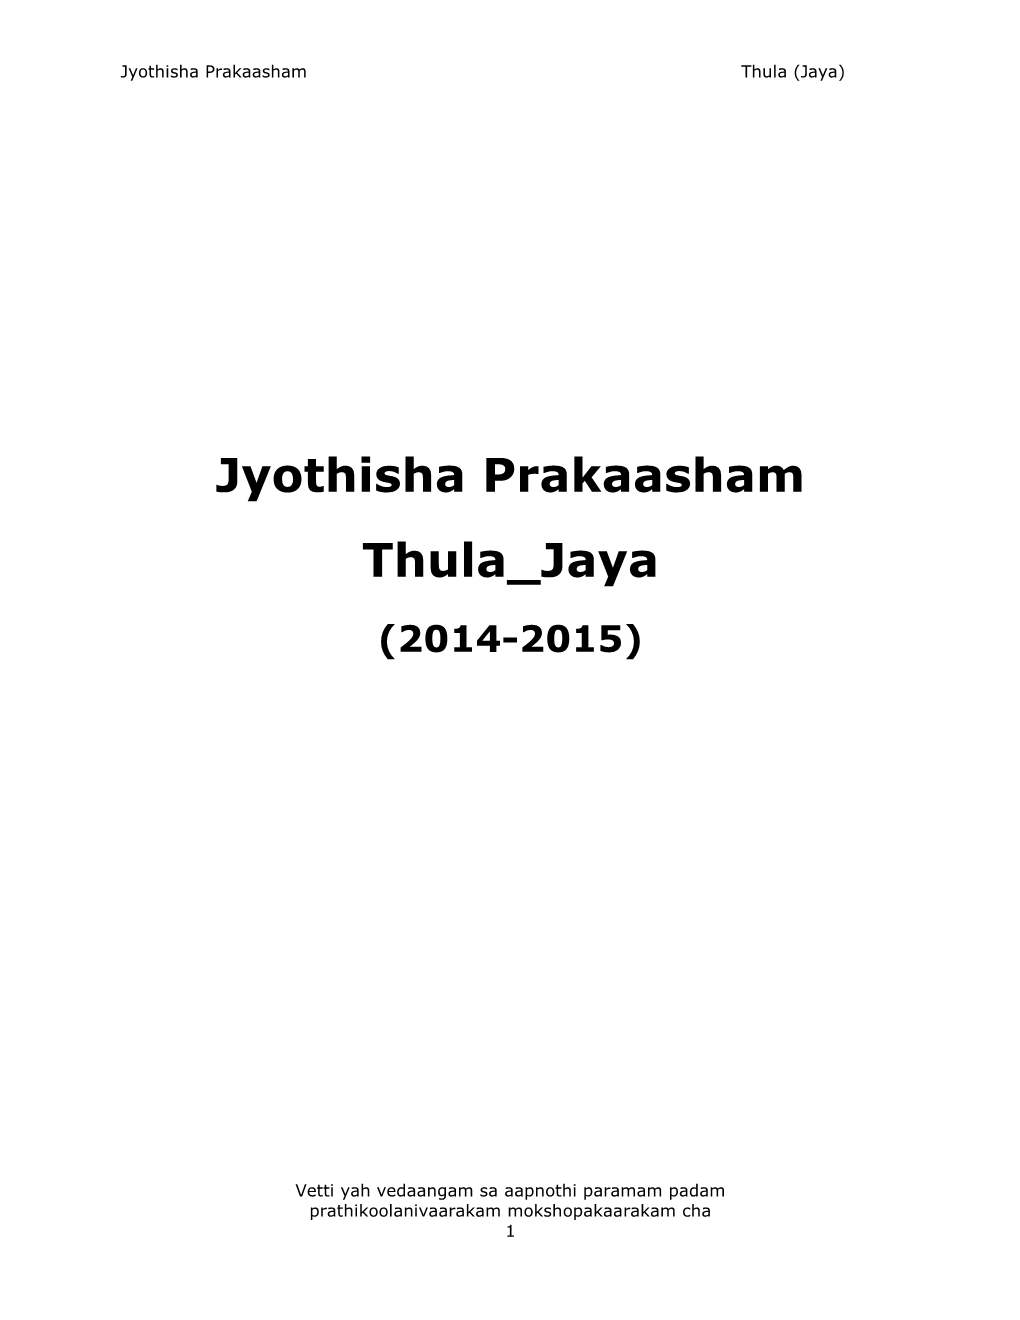 Jyothisha Prakaasham Thula Jaya